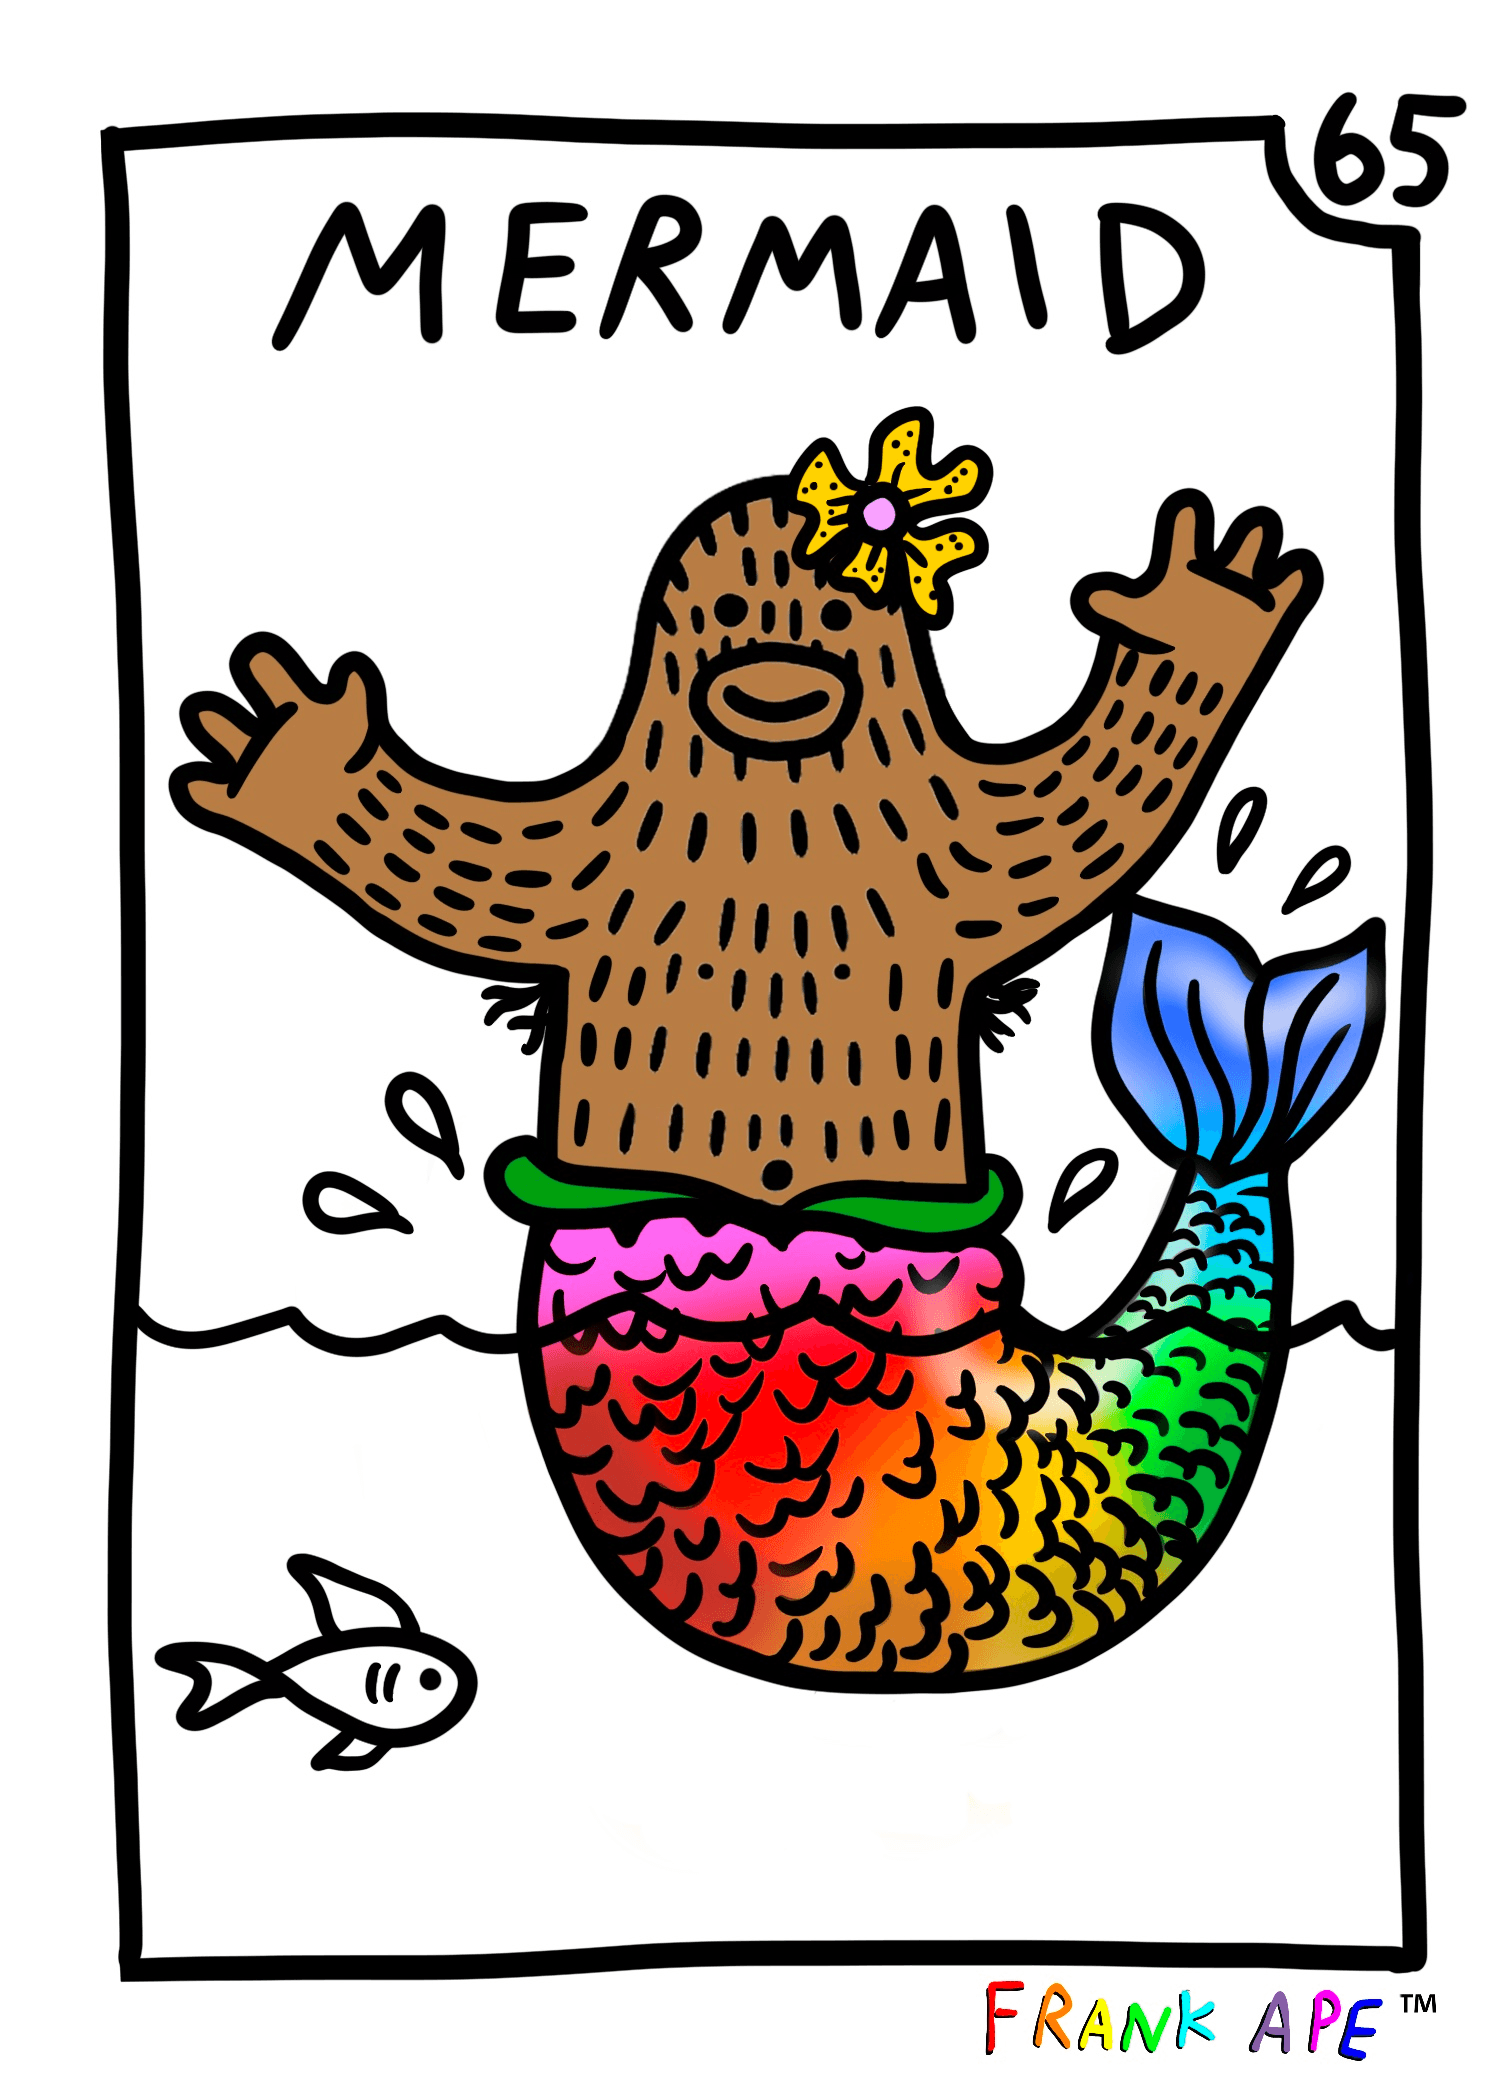 Frank Friends #65 - Mermaid